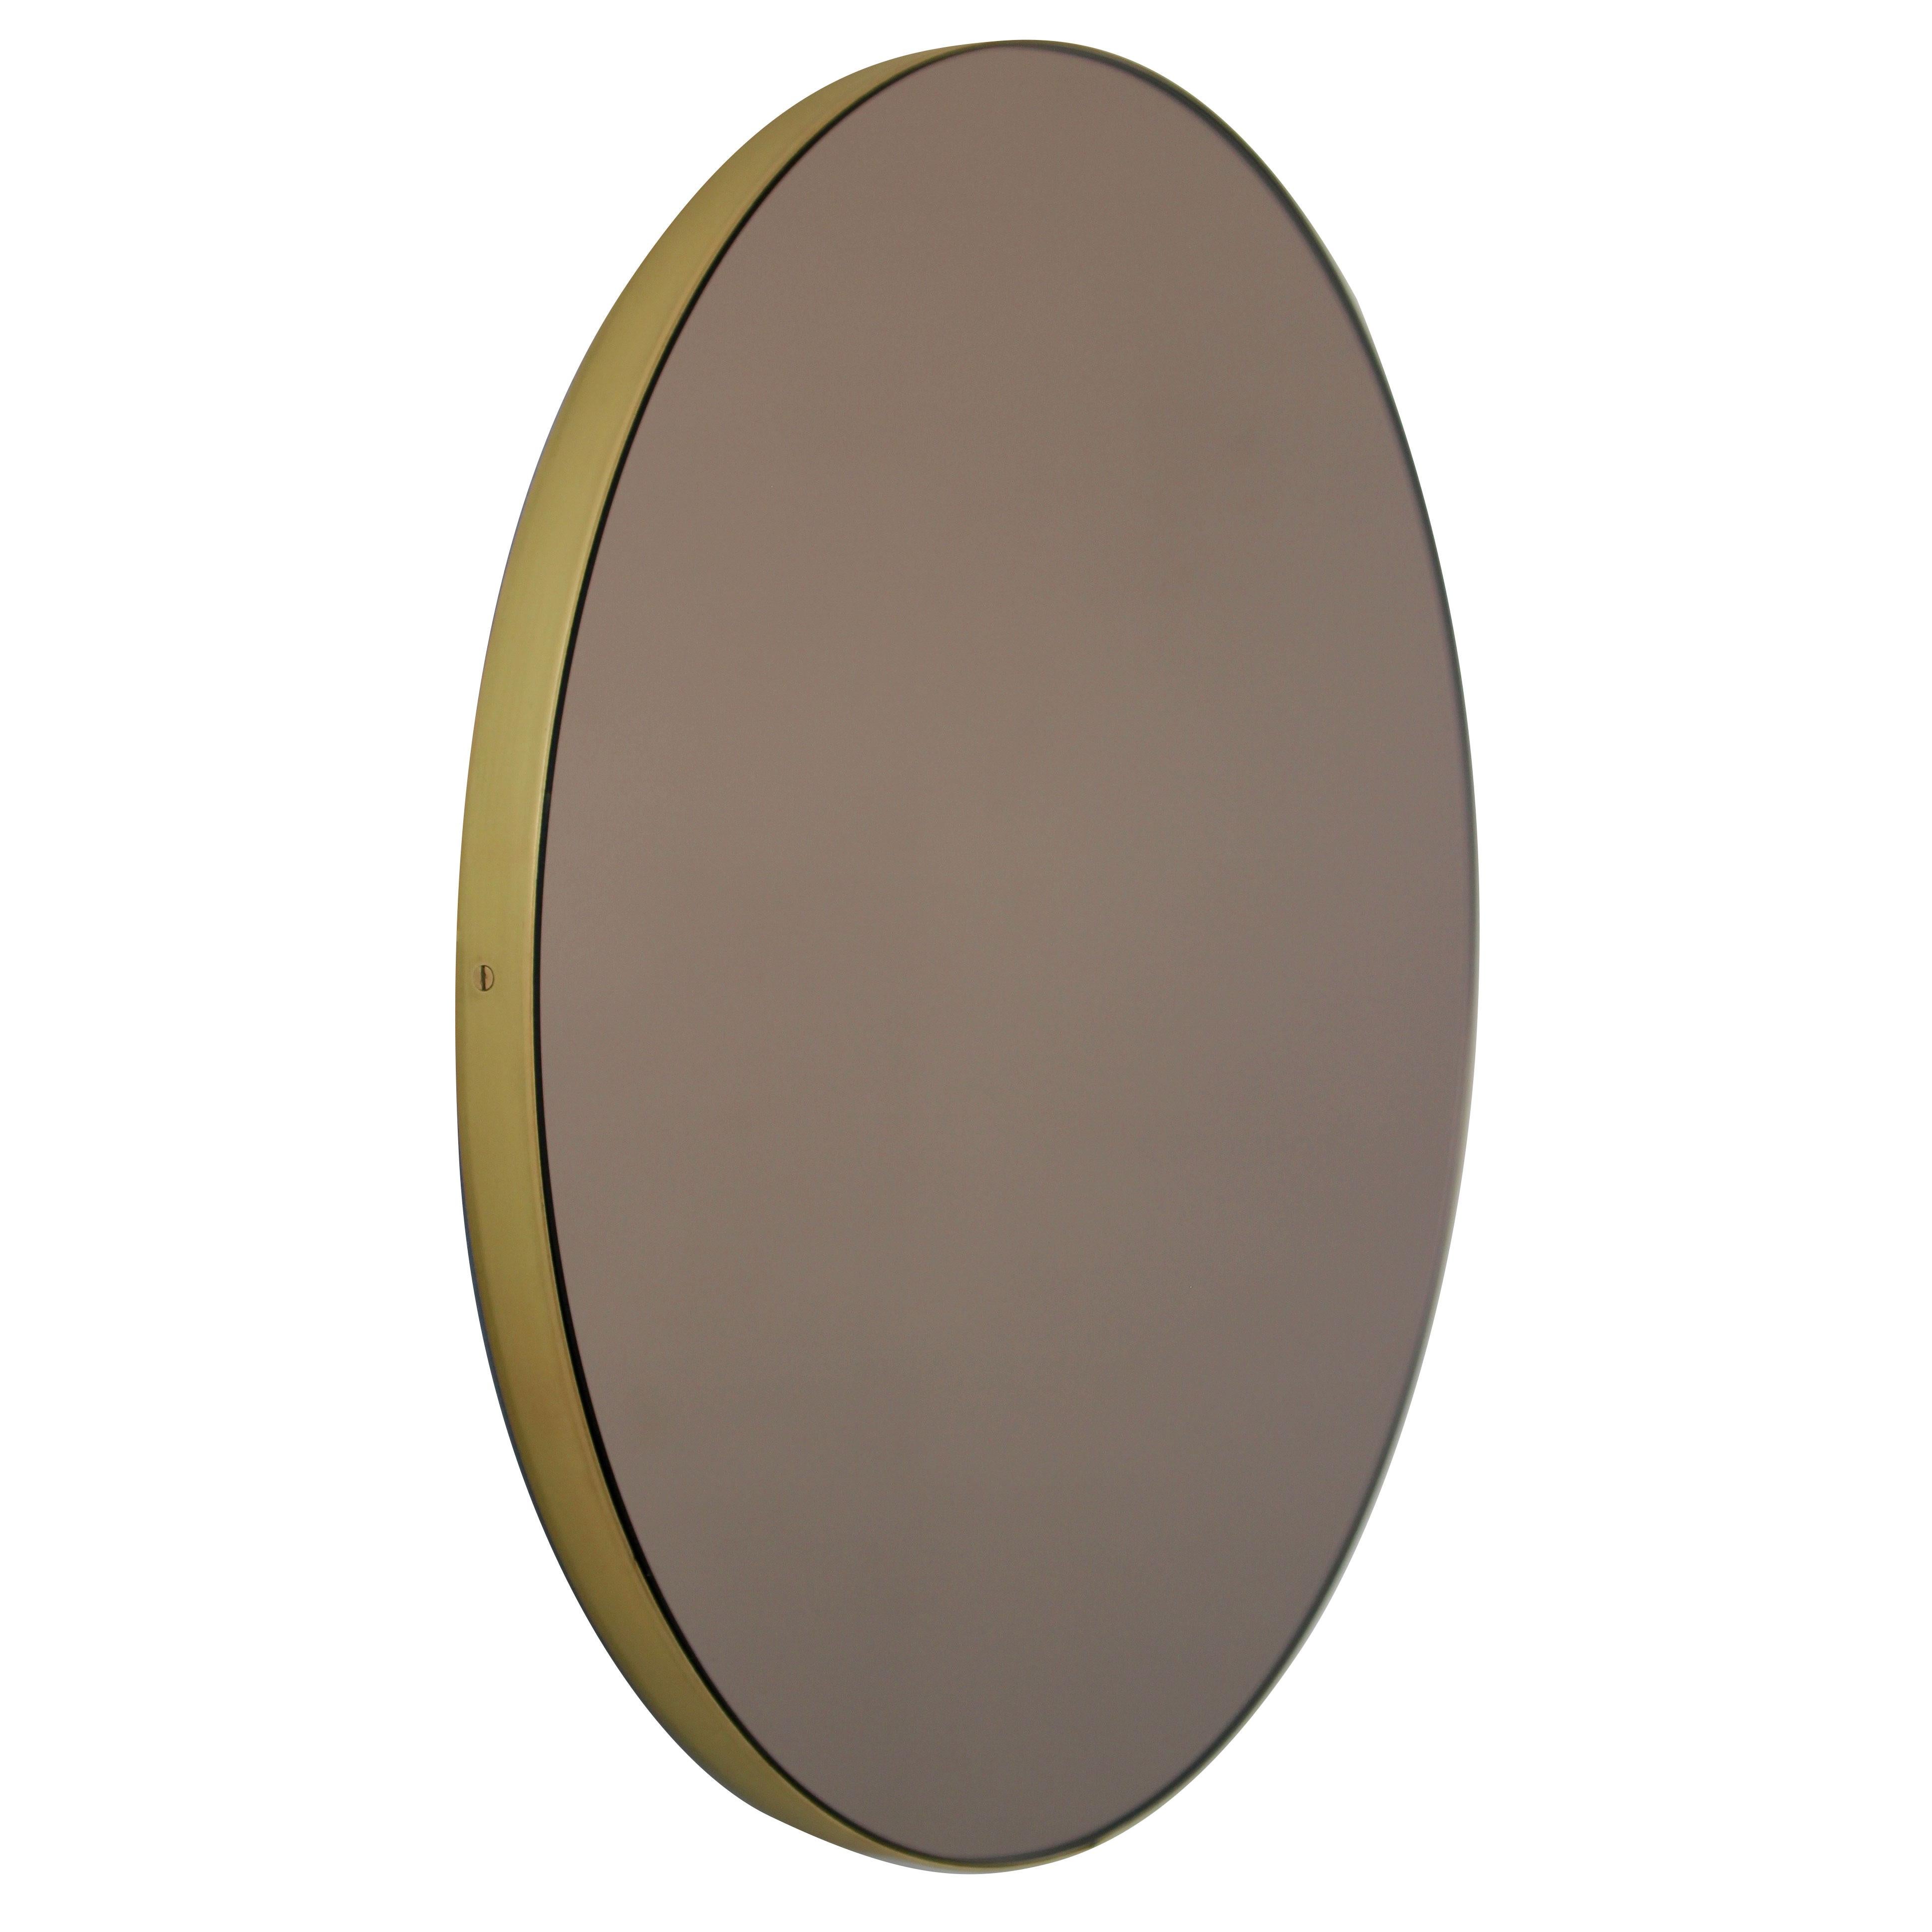 Orbis Bronze Tinted Contemporary Round Mirror, Brass Frame, Medium